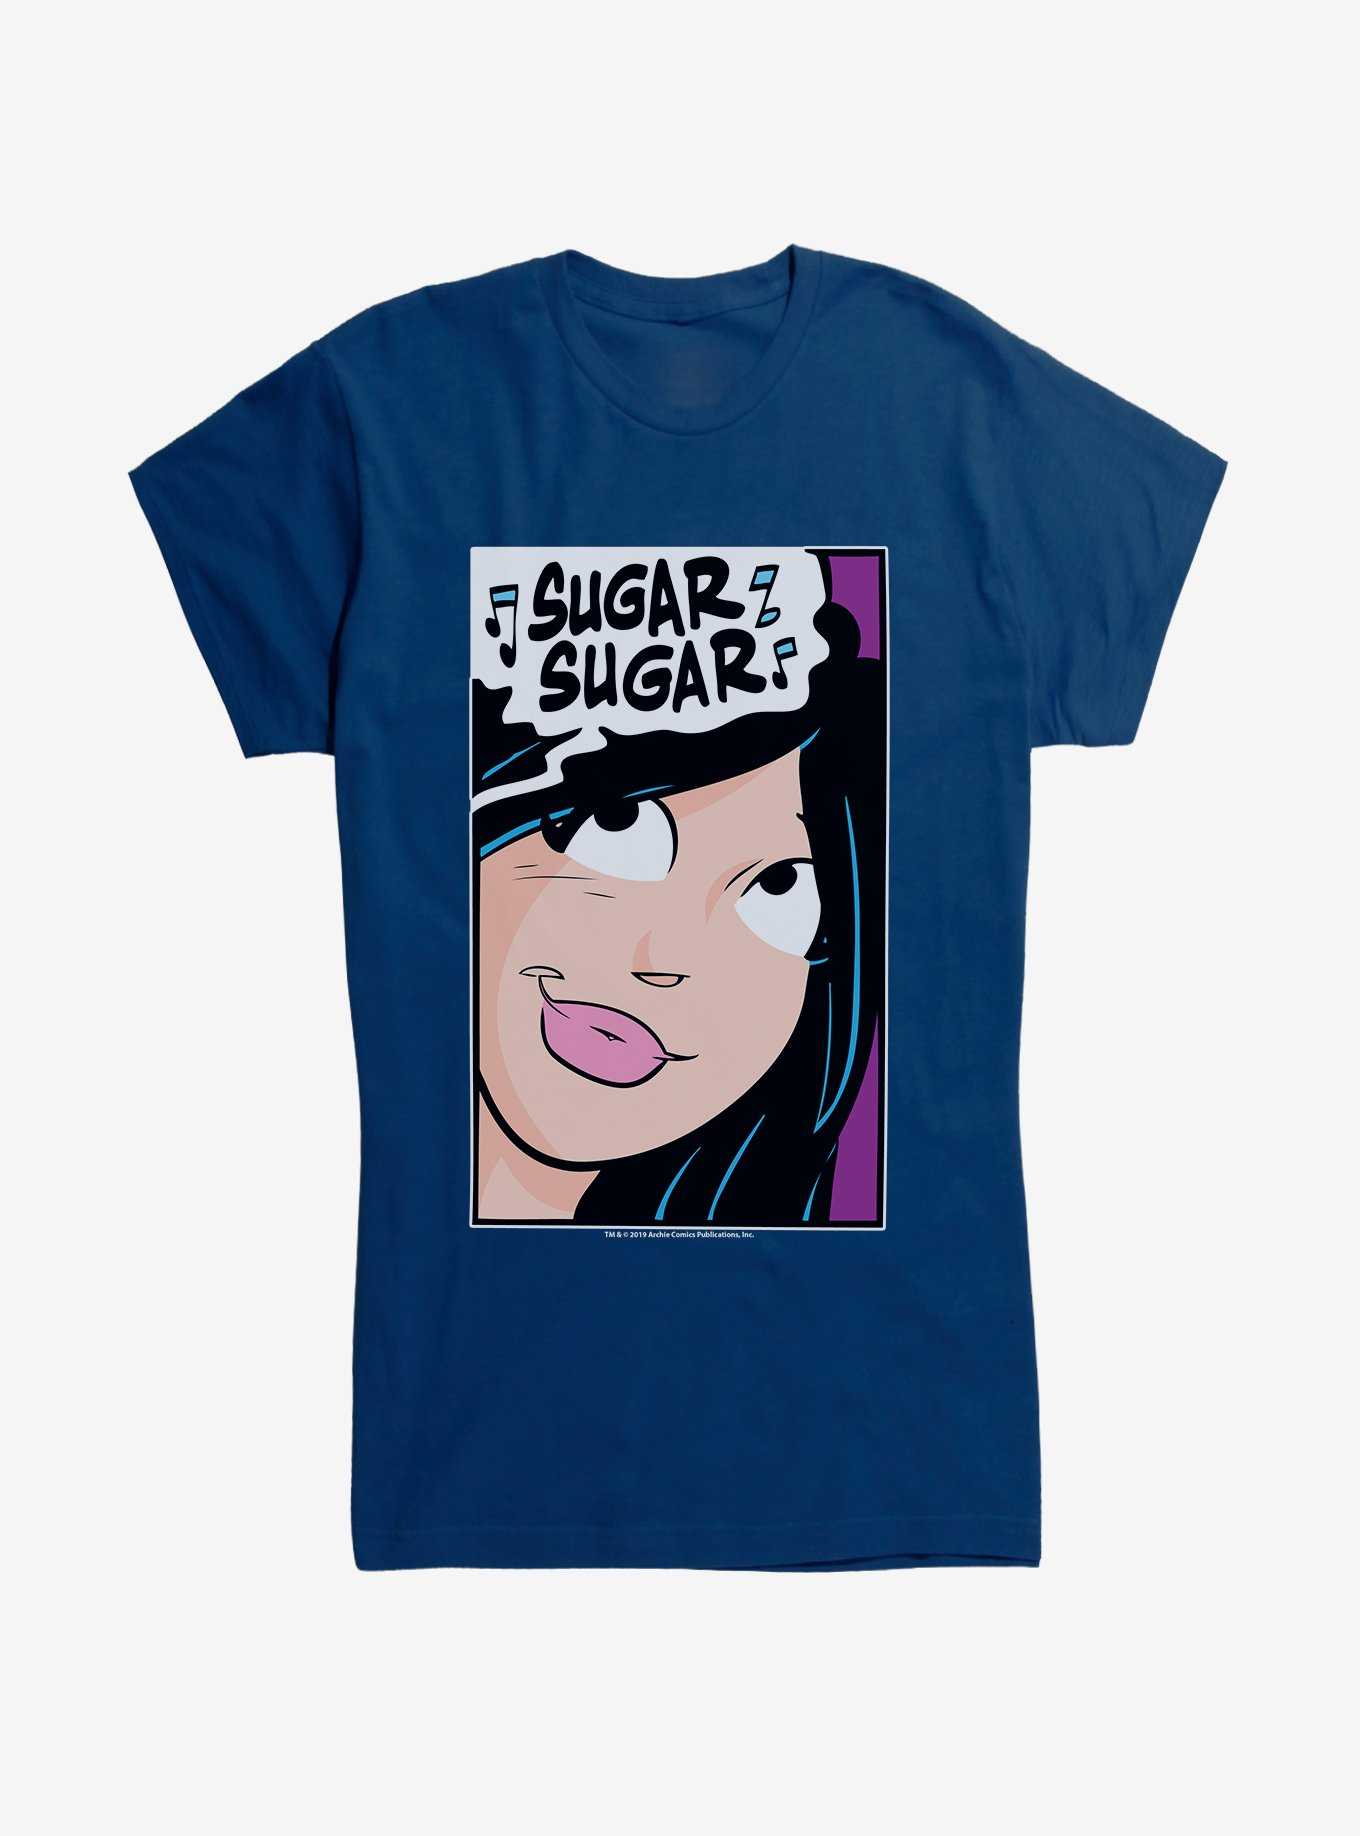 Archie Comics Veronica Sugar Girls T-Shirt, , hi-res